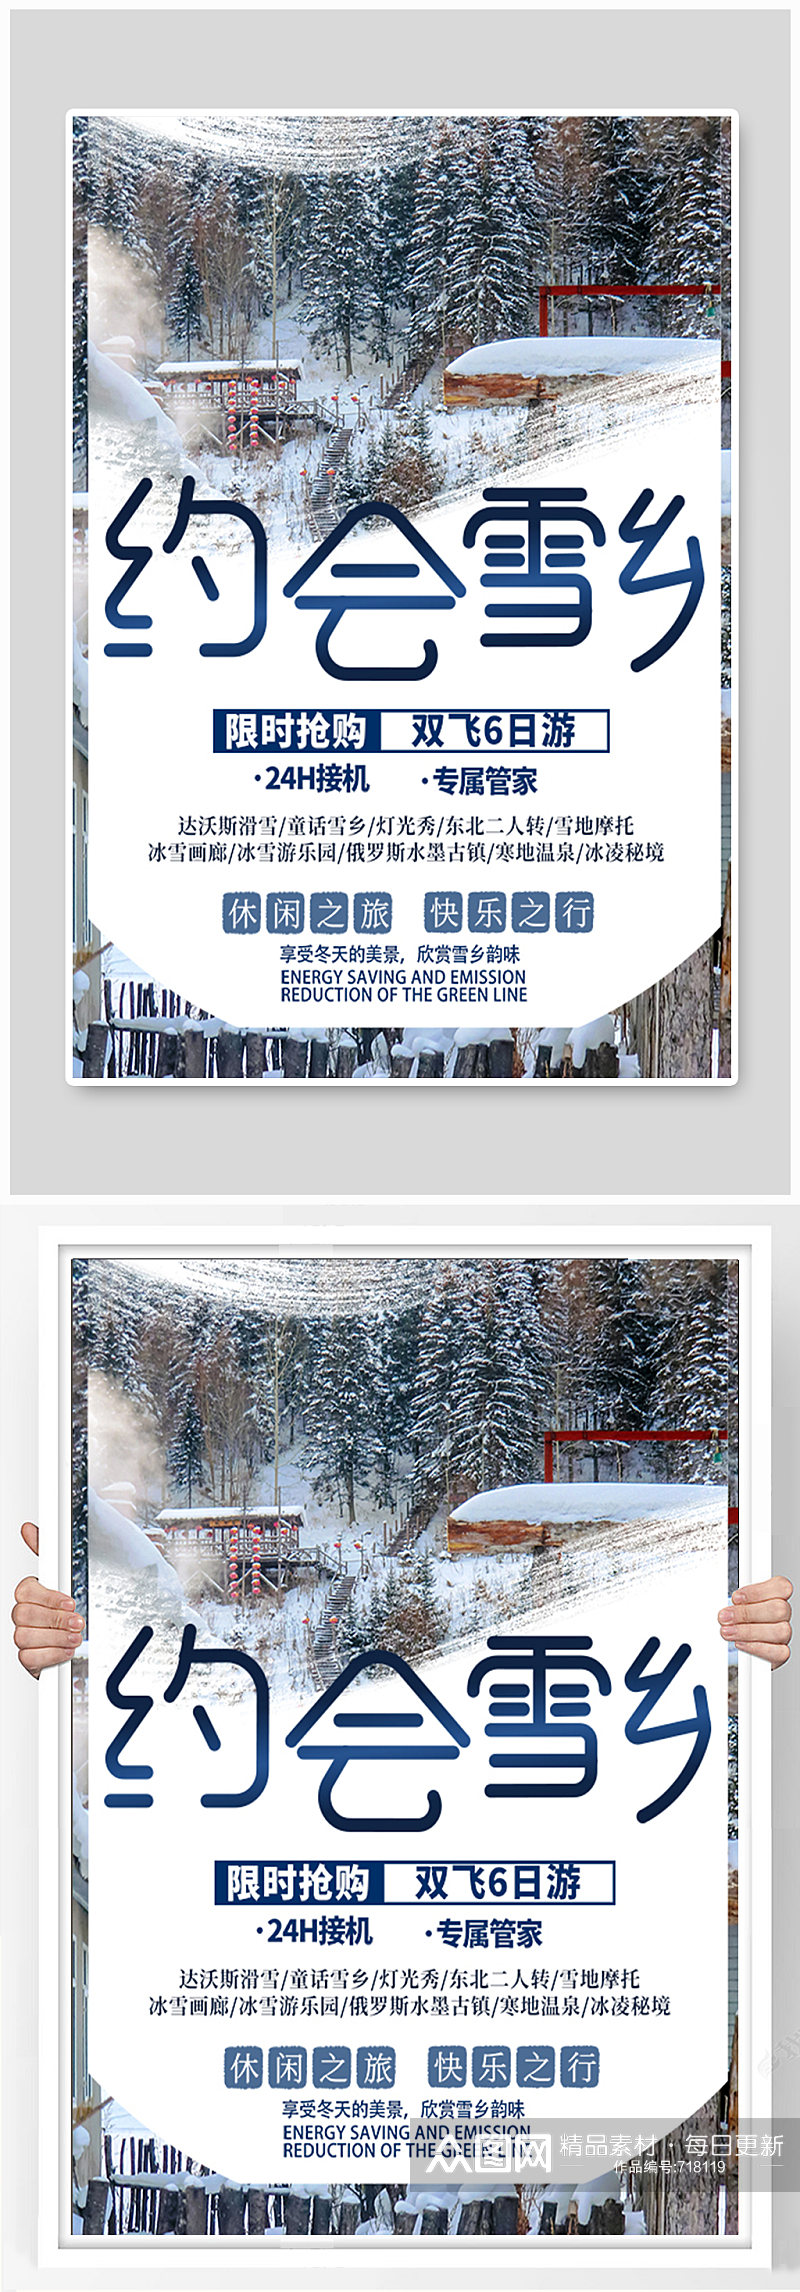 东北哈尔滨雪乡旅游宣传海报素材